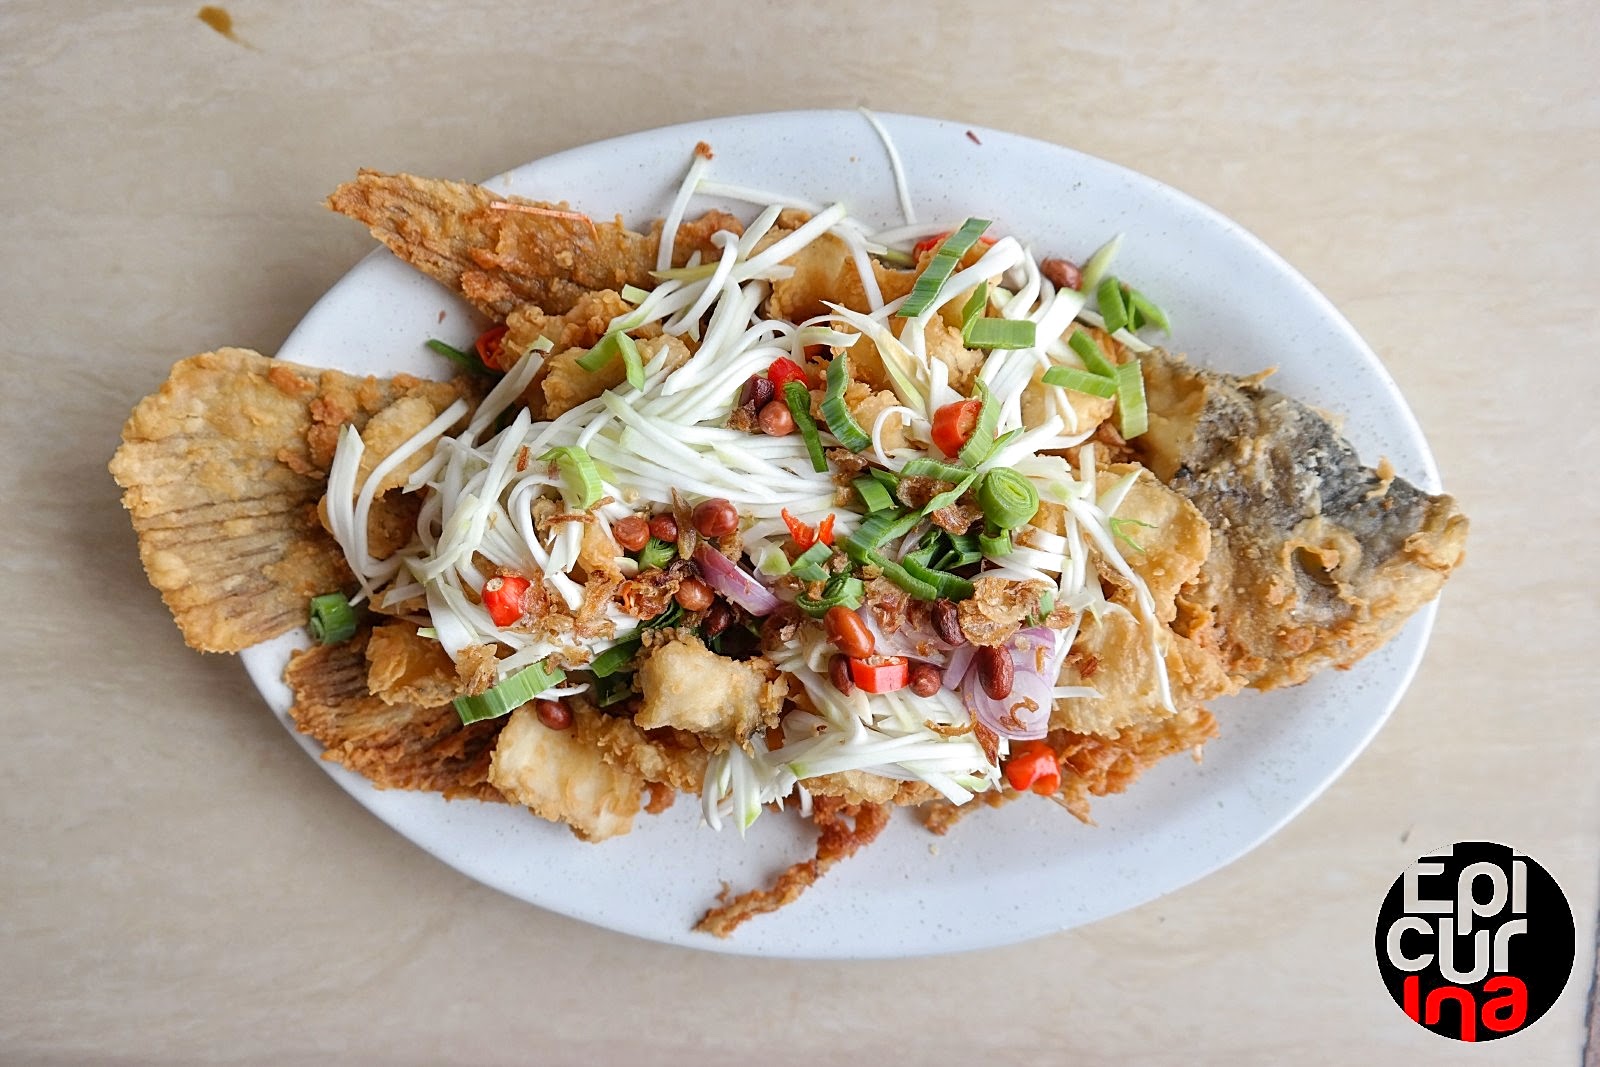 Epicurina - Bali Food Adventure Blog: Top 8 Halal Food in Ubud